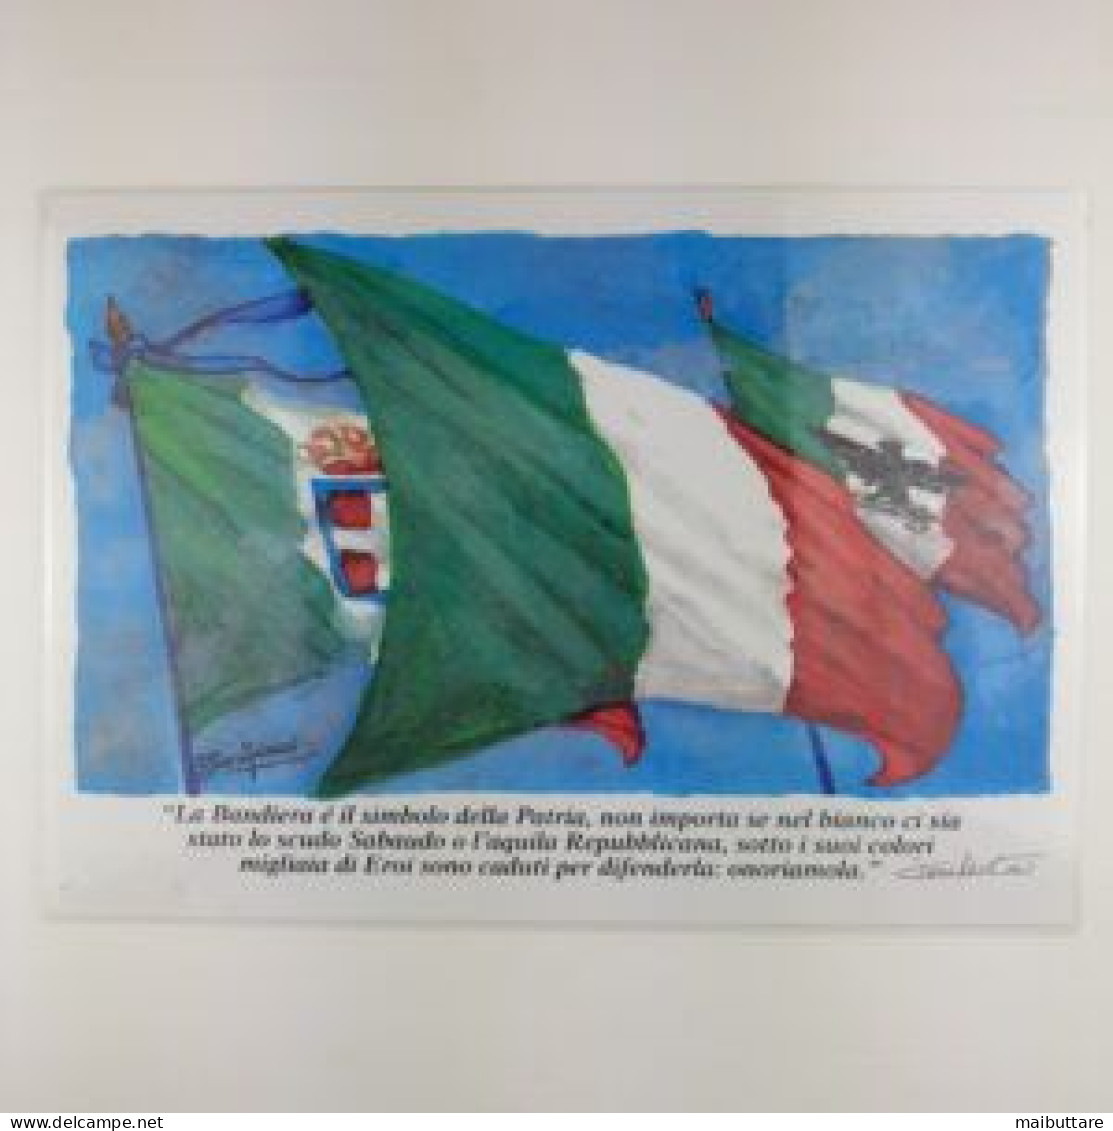 Stampa Plastificata Raffigurante Bandiere Italiane Con Stemma Sabaudo E Aquila Repubblicana - Bandiere